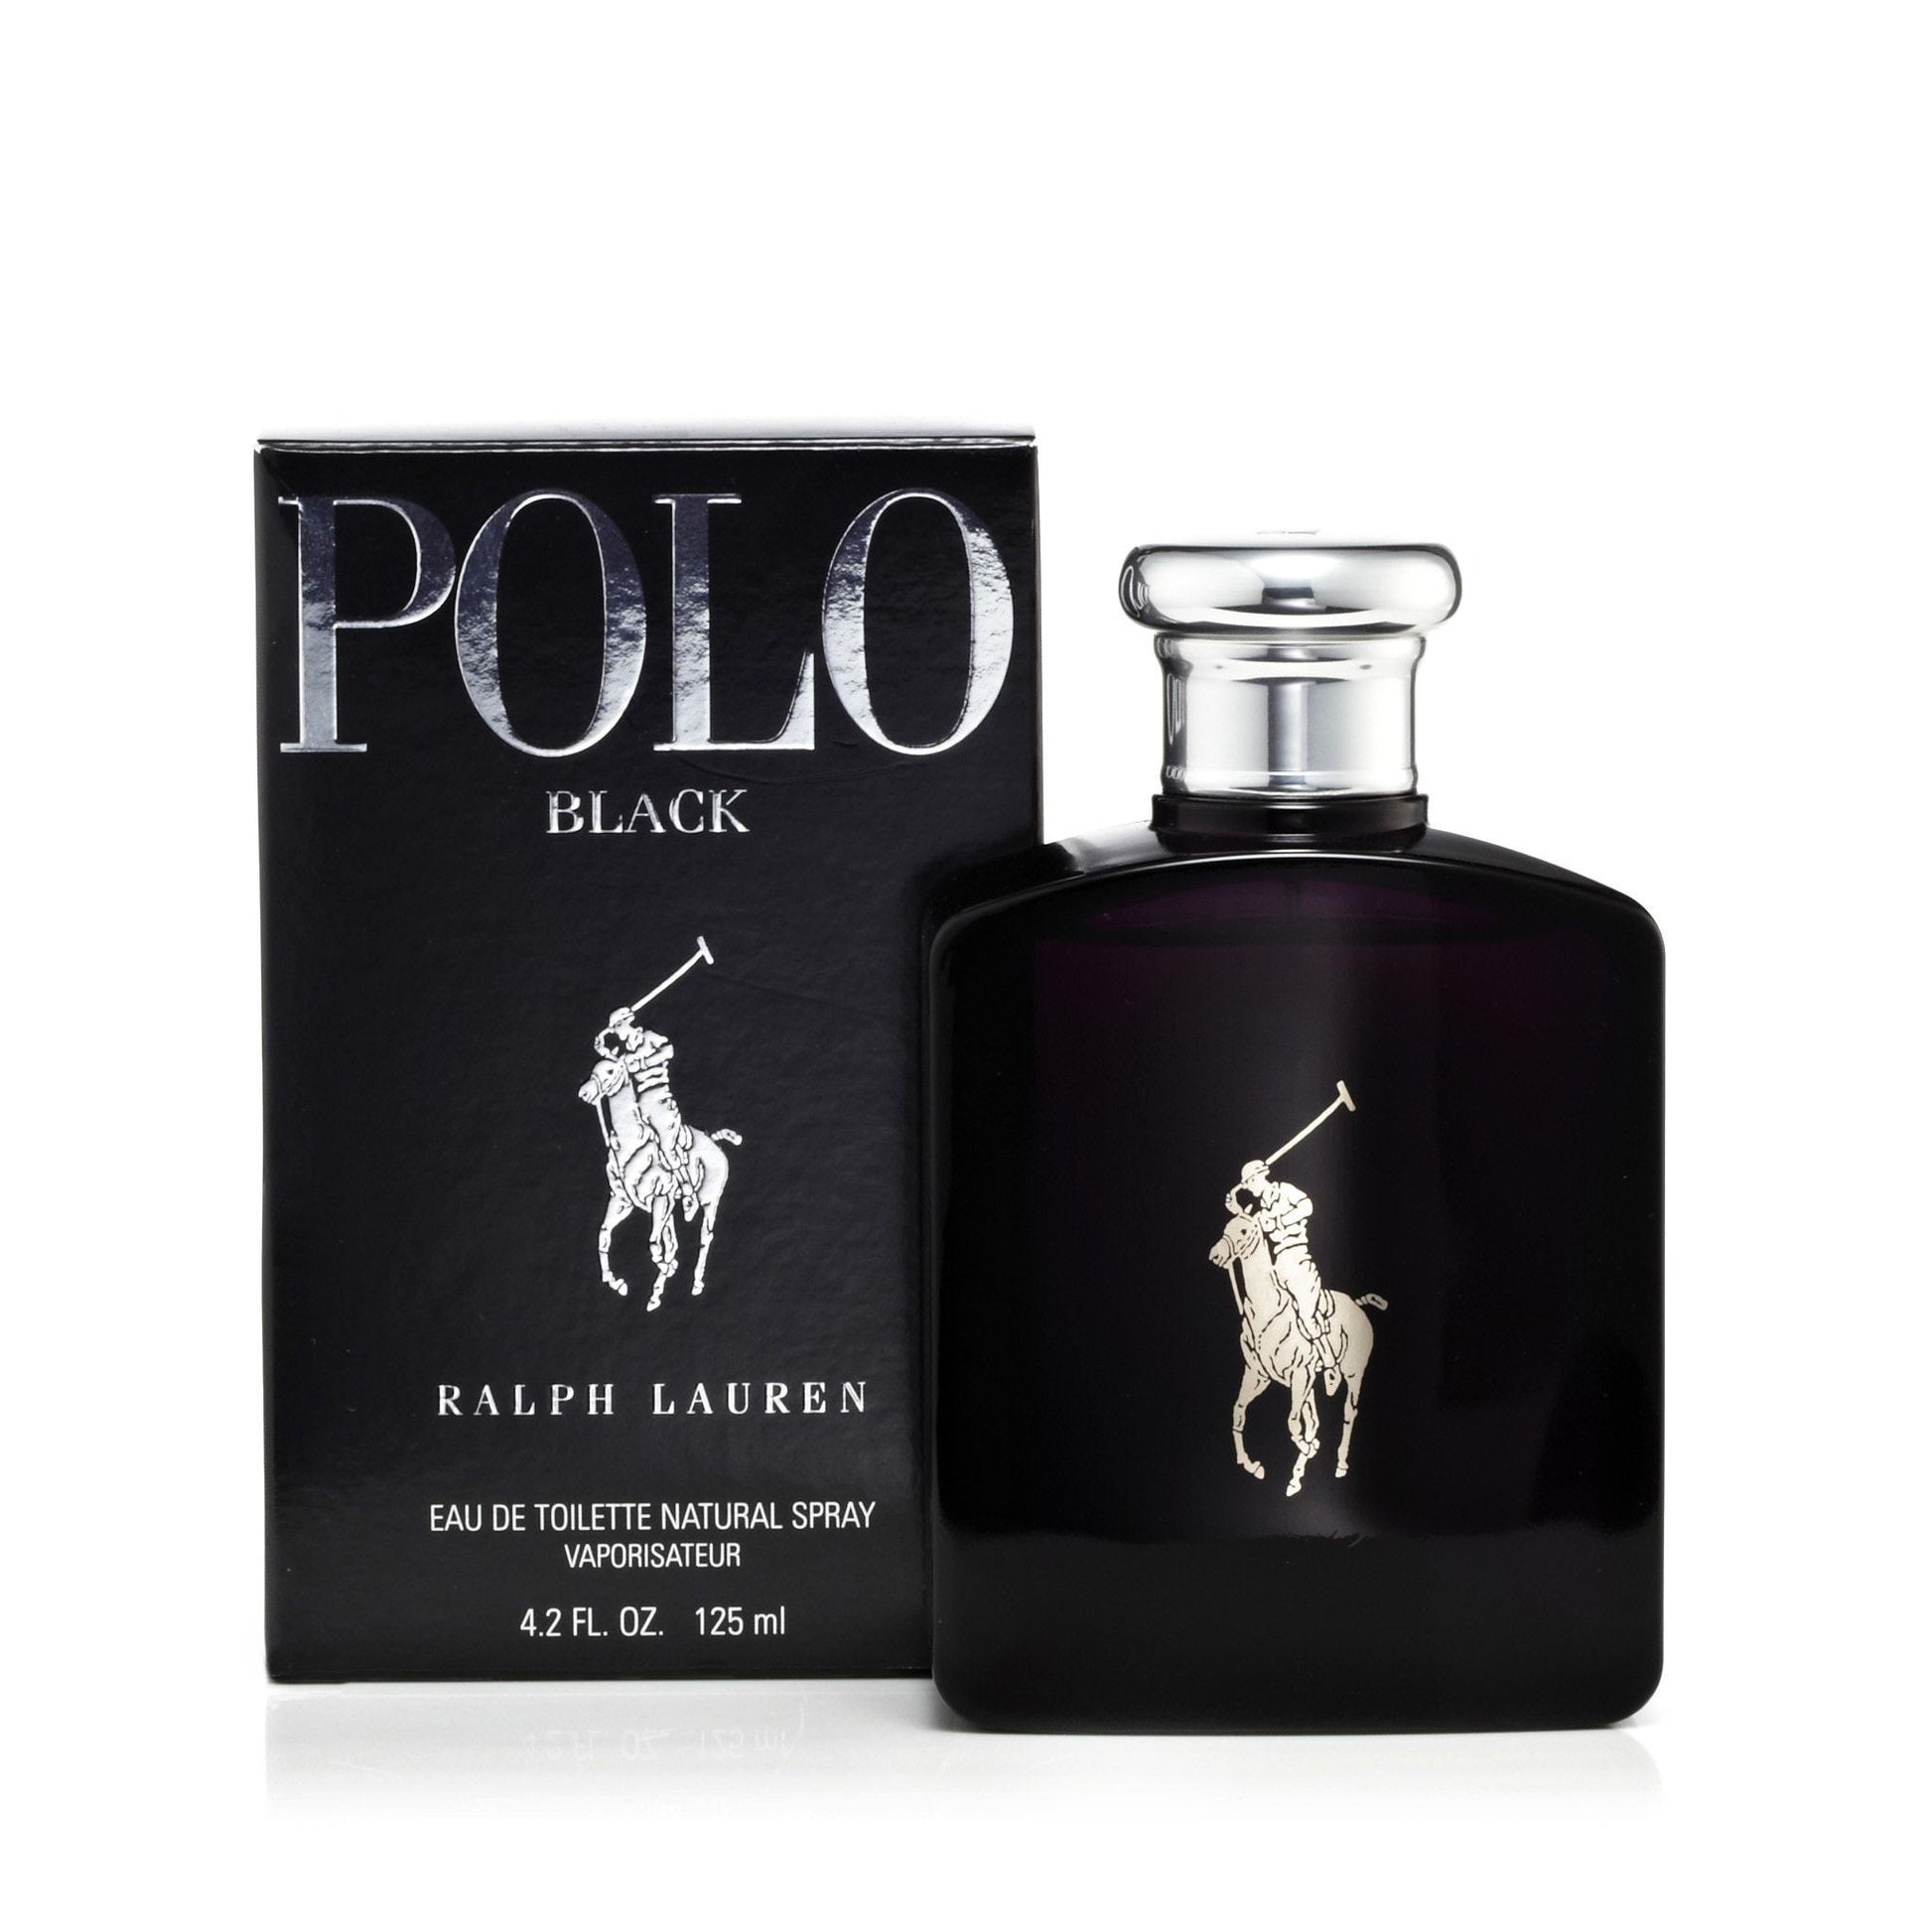 https://www.fragranceoutlet.com/cdn/shop/products/Ralph-Lauren-Polo-Black-Mens-Eau-de-Toilette-Spray-4.2-Best-Price-Fragrance-Parfume-FragranceOutlet.com-Details.jpg?v=1626819339&width=1946